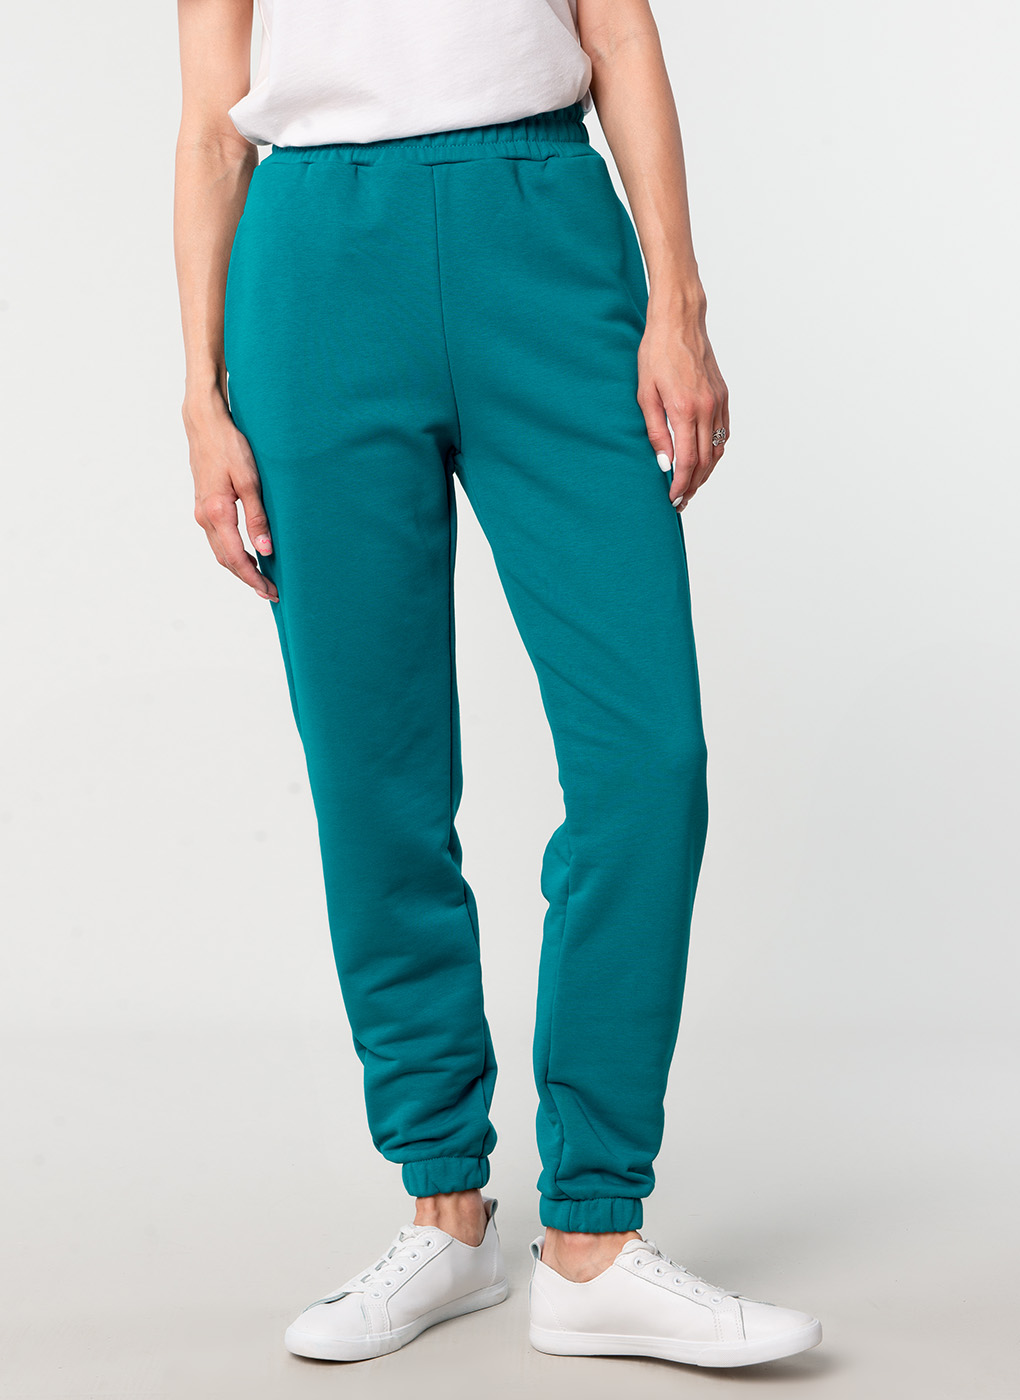 фото Спортивные брюки женские tanini 61316 зеленые 44 ru